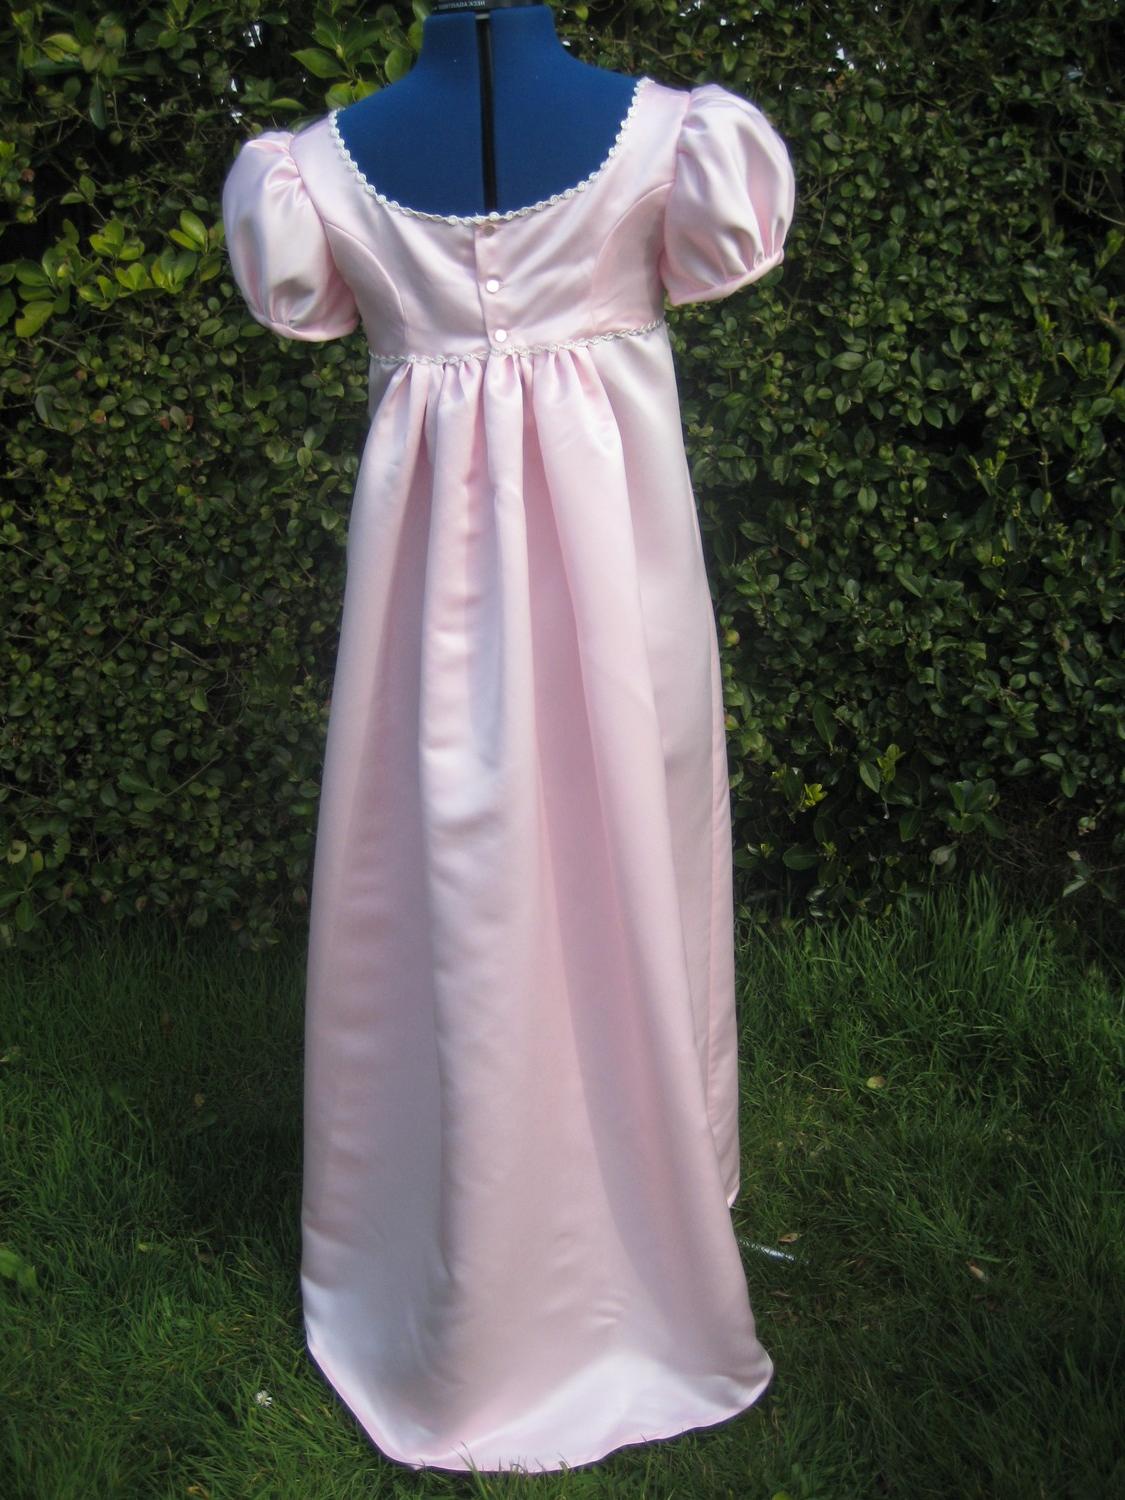 Regency Dress. Jane Austen